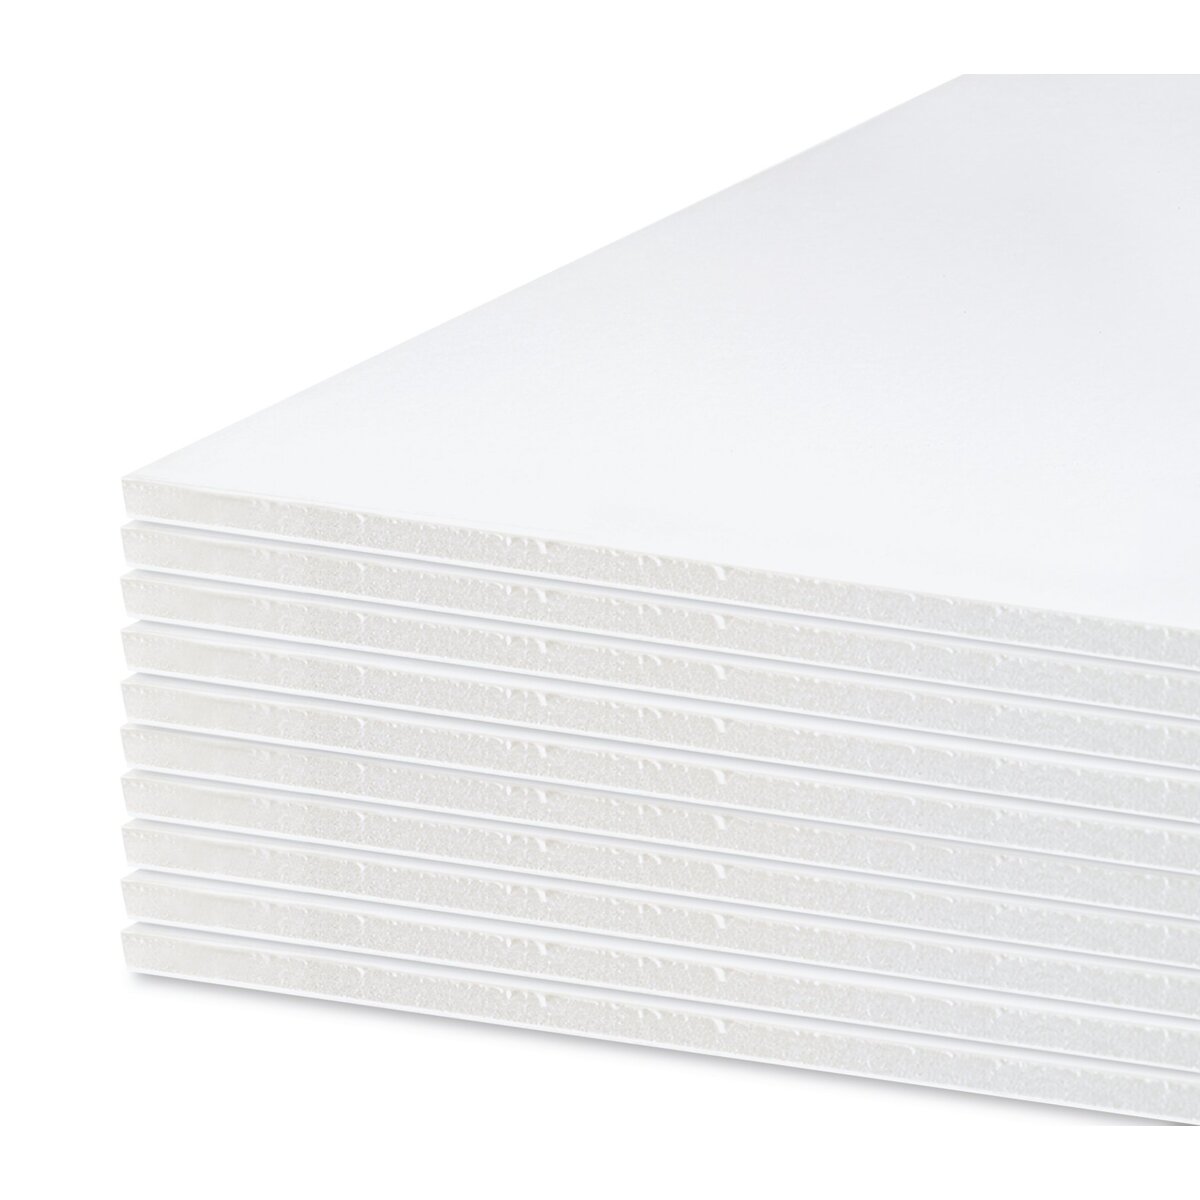 Foamboard 40 x 60, 1/2 thick, White